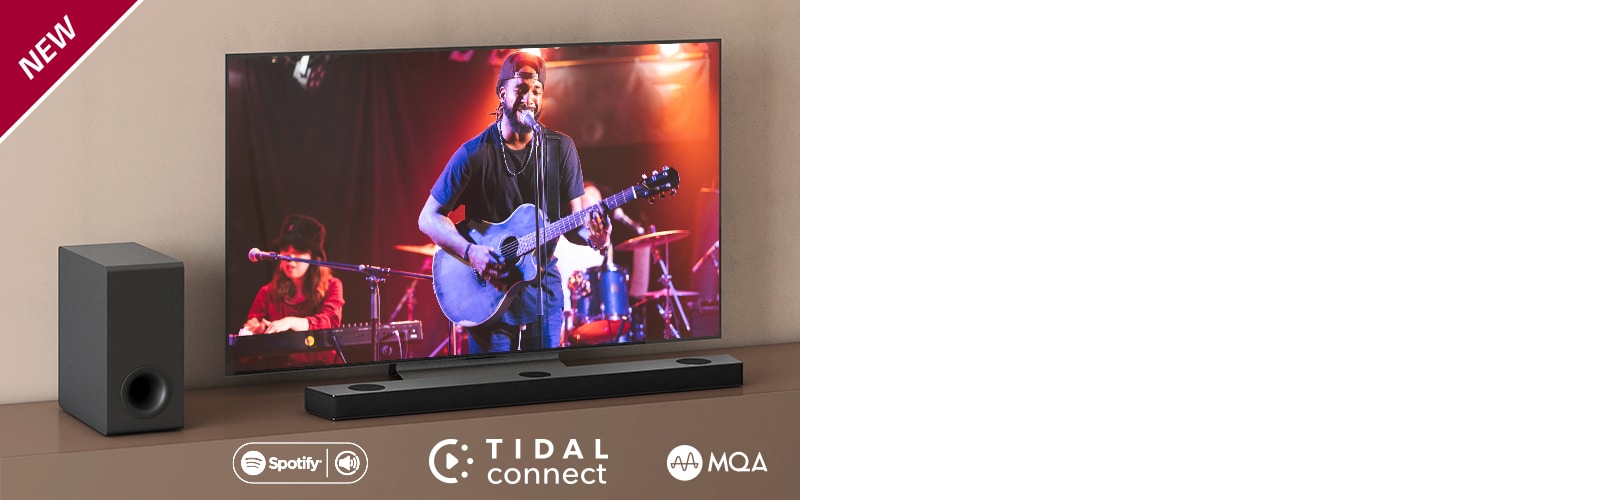 Телевизор LG стоит на серой полке, перед телевизором стоит саундбар LG S90QY. Слева от телевизора стоит сабвуфер. На телевизоре демонстрируется сцена концерта. НОВАЯ маркировка показана в верхнем левом углу.